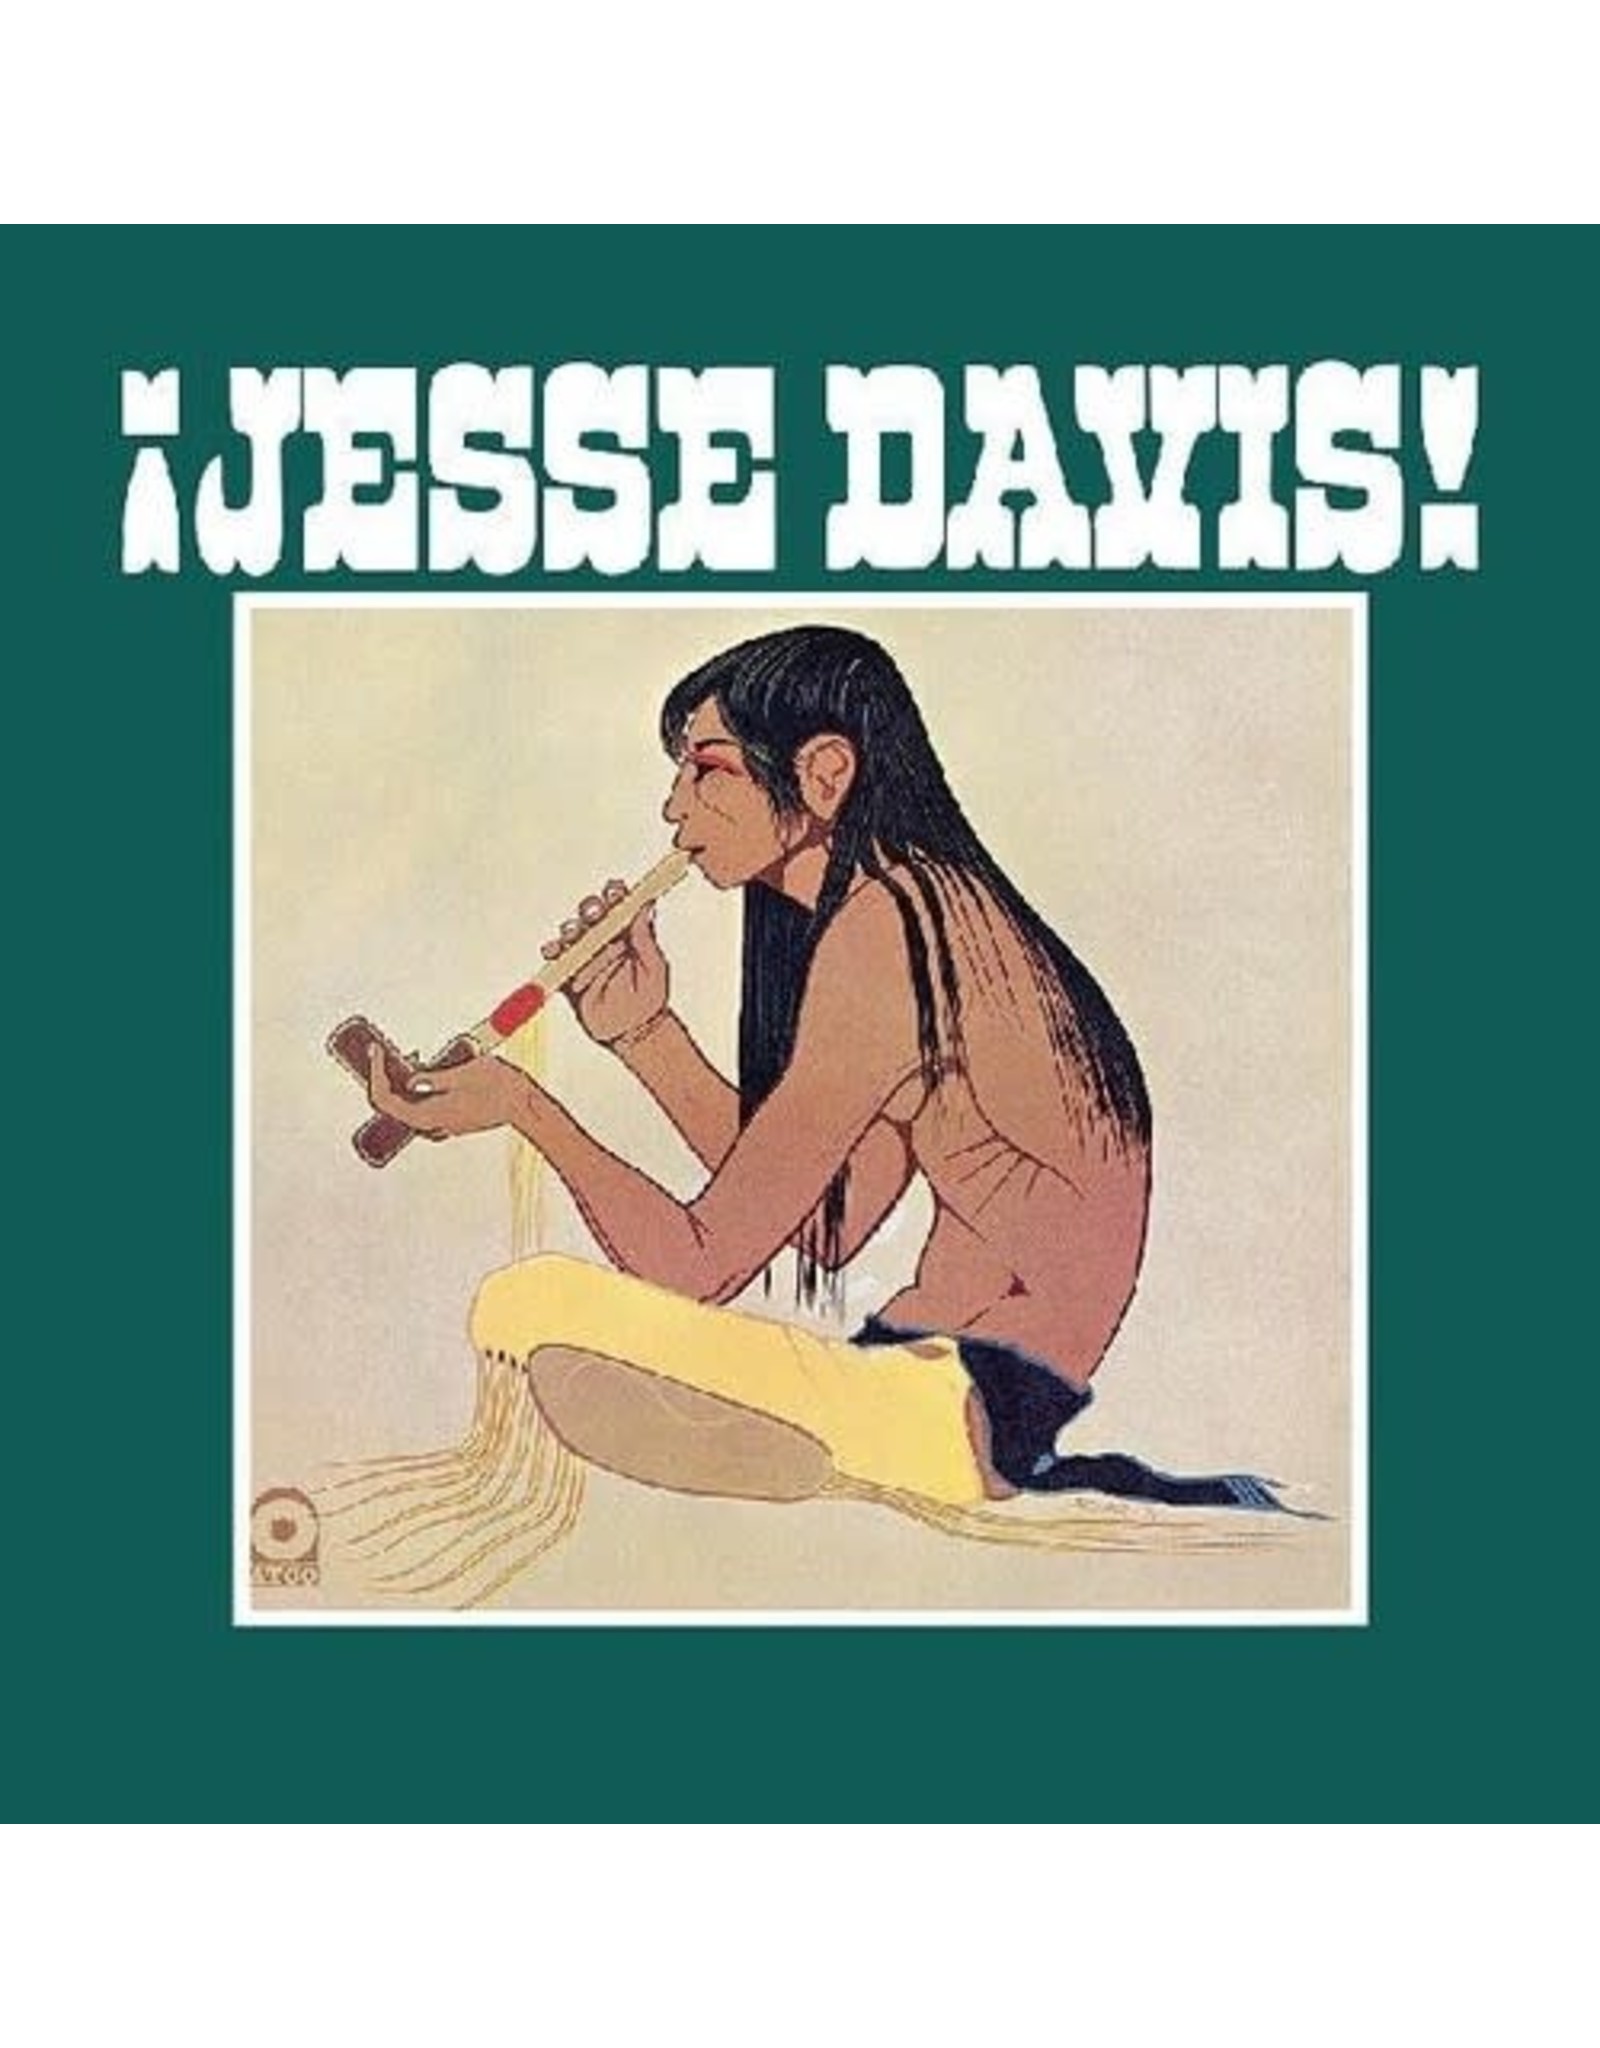 Davis, Jesse / Jesse Davis!